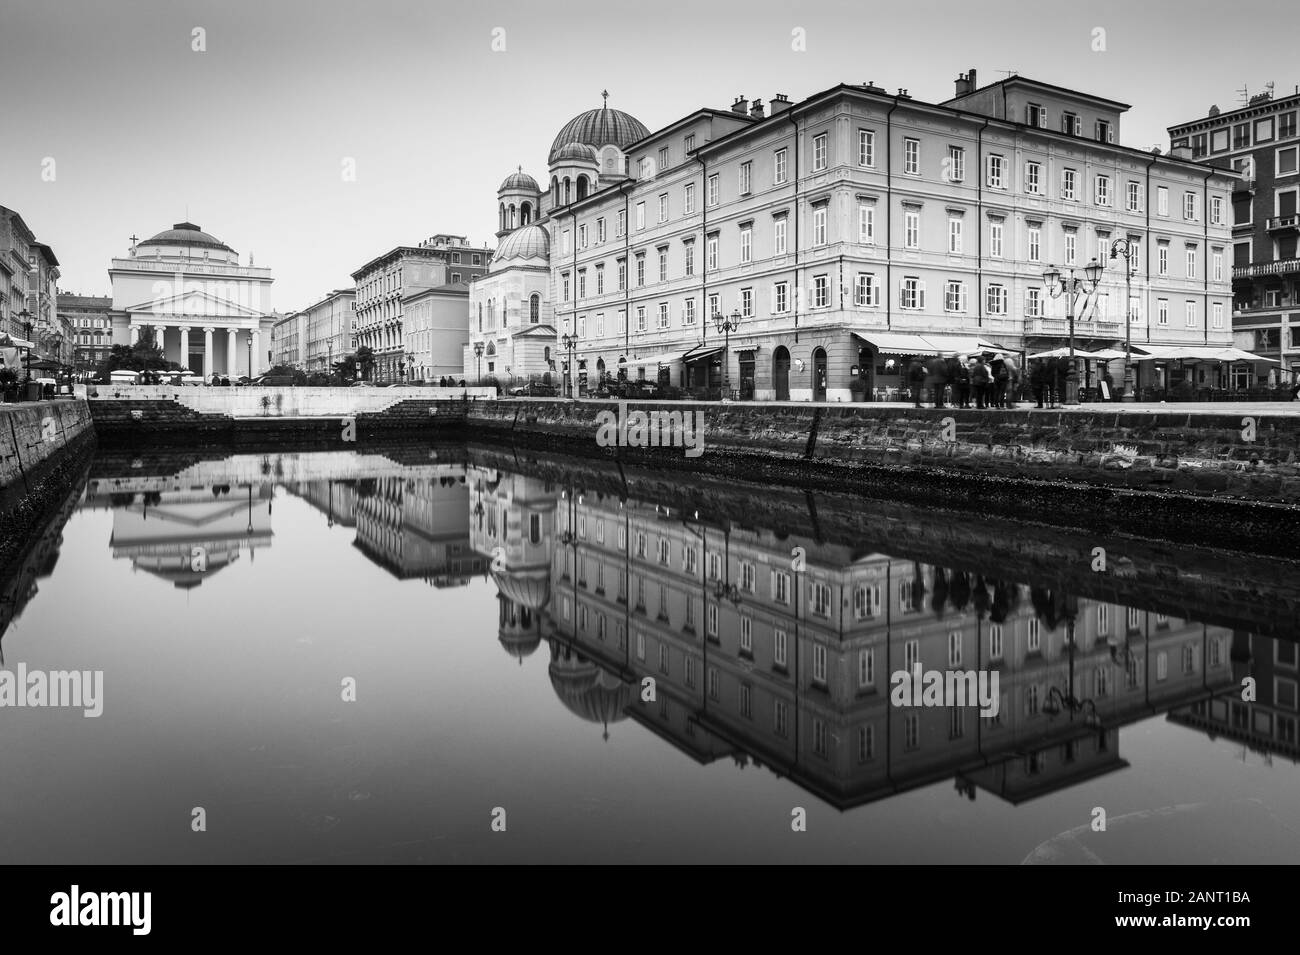 Trieste - décembre 2016, Italie: Miroir reflétant les bâtiments historiques dans le canal d'eau situé dans le centre de la ville Banque D'Images